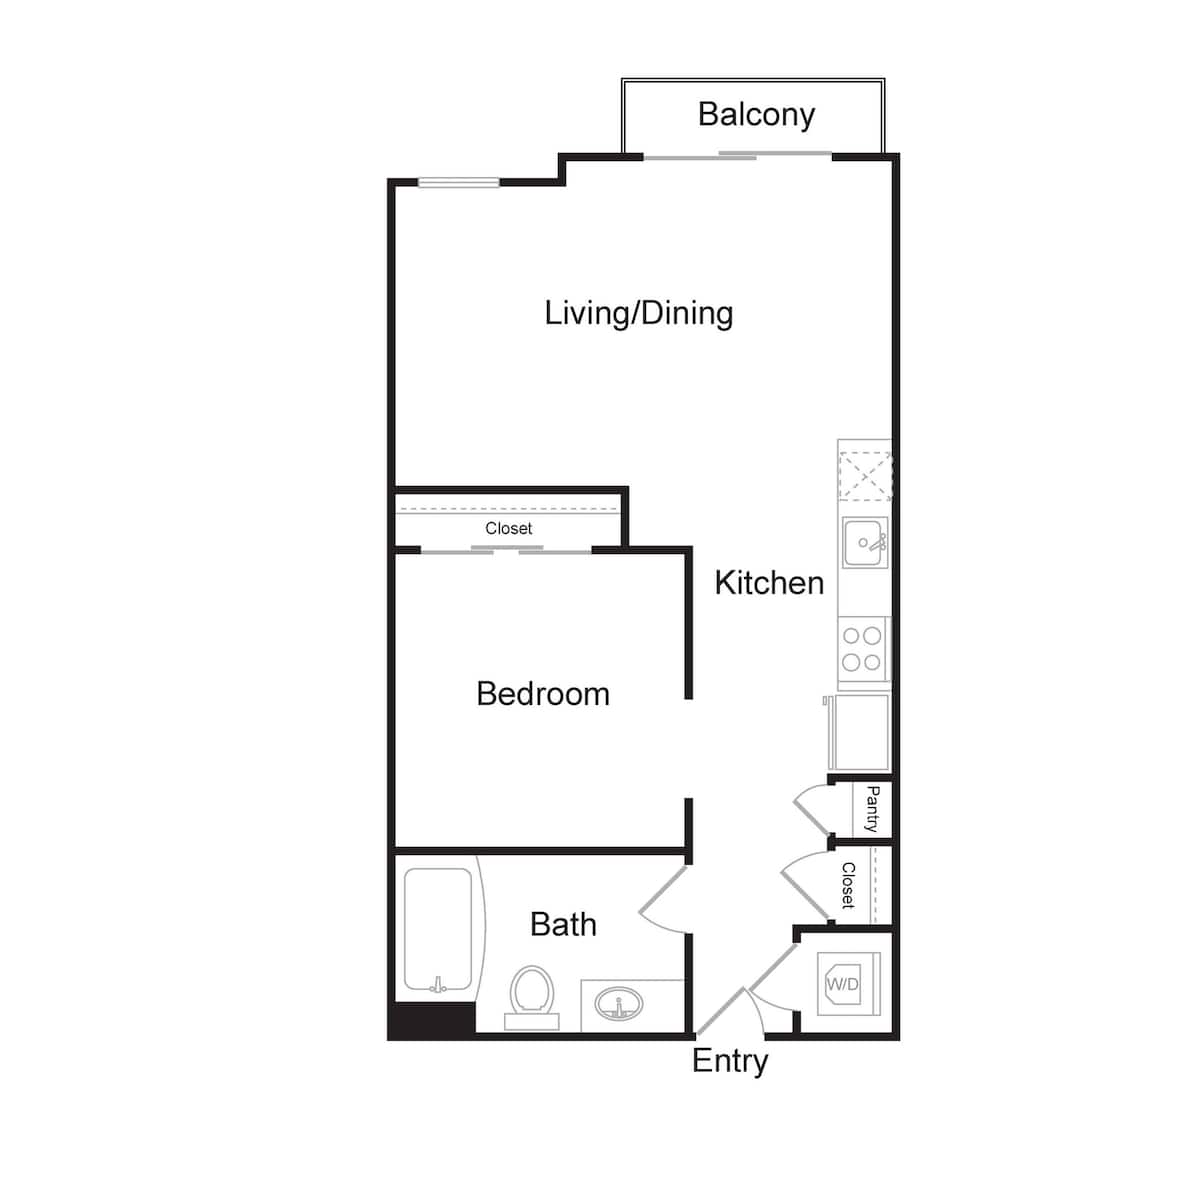 Floorplan diagram for S1, showing 1 bedroom